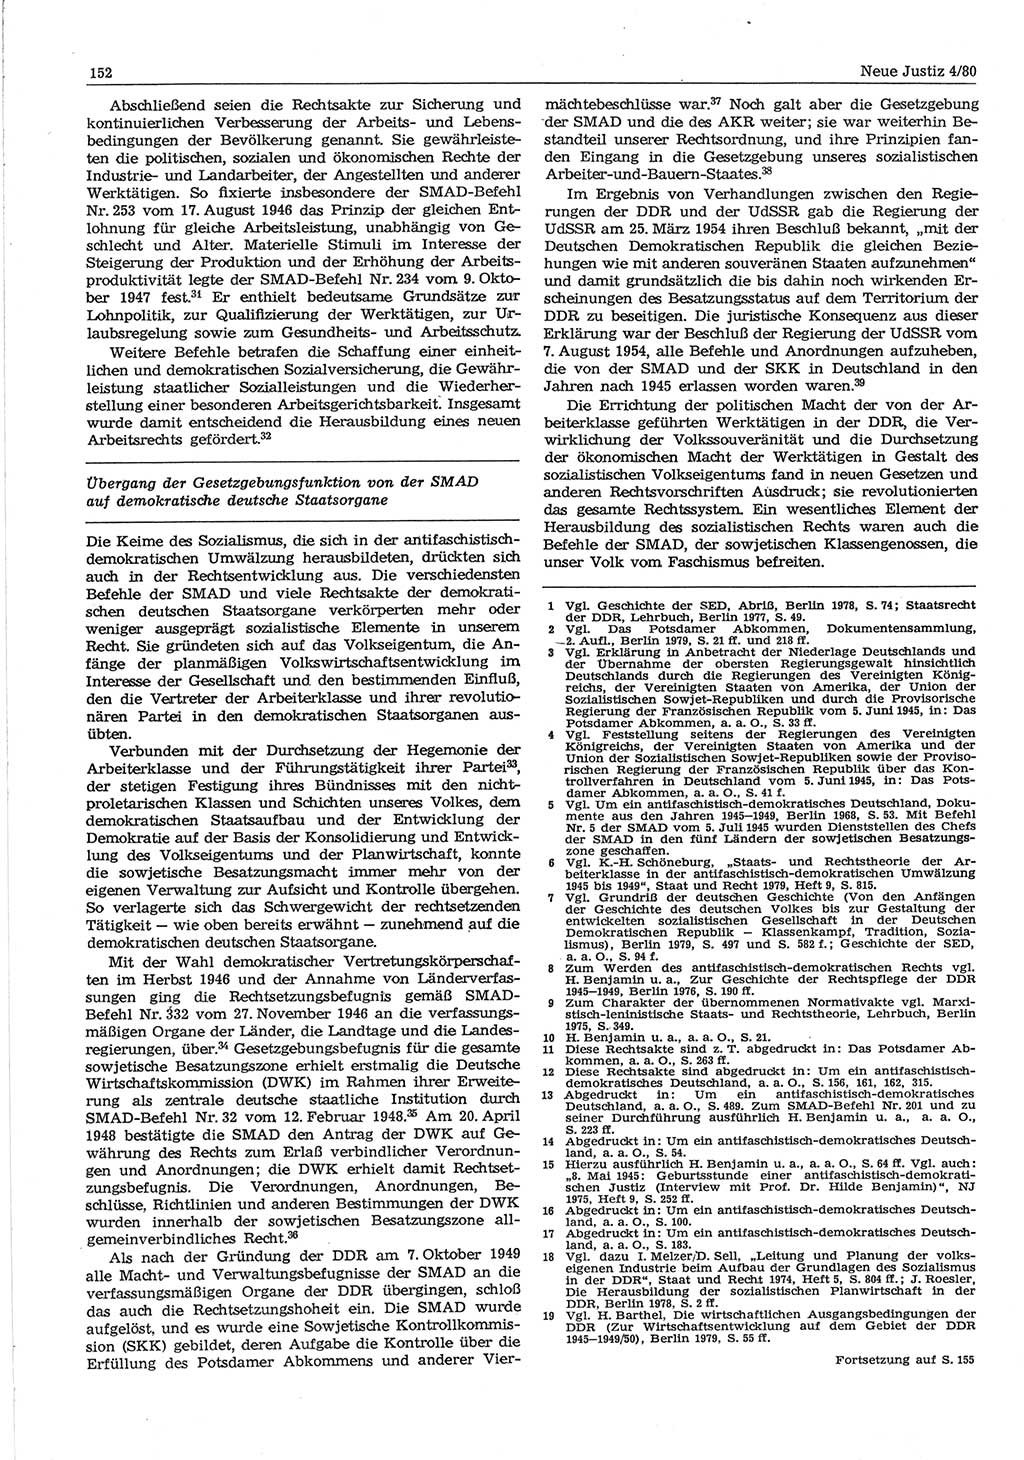 Neue Justiz (NJ), Zeitschrift für sozialistisches Recht und Gesetzlichkeit [Deutsche Demokratische Republik (DDR)], 34. Jahrgang 1980, Seite 152 (NJ DDR 1980, S. 152)